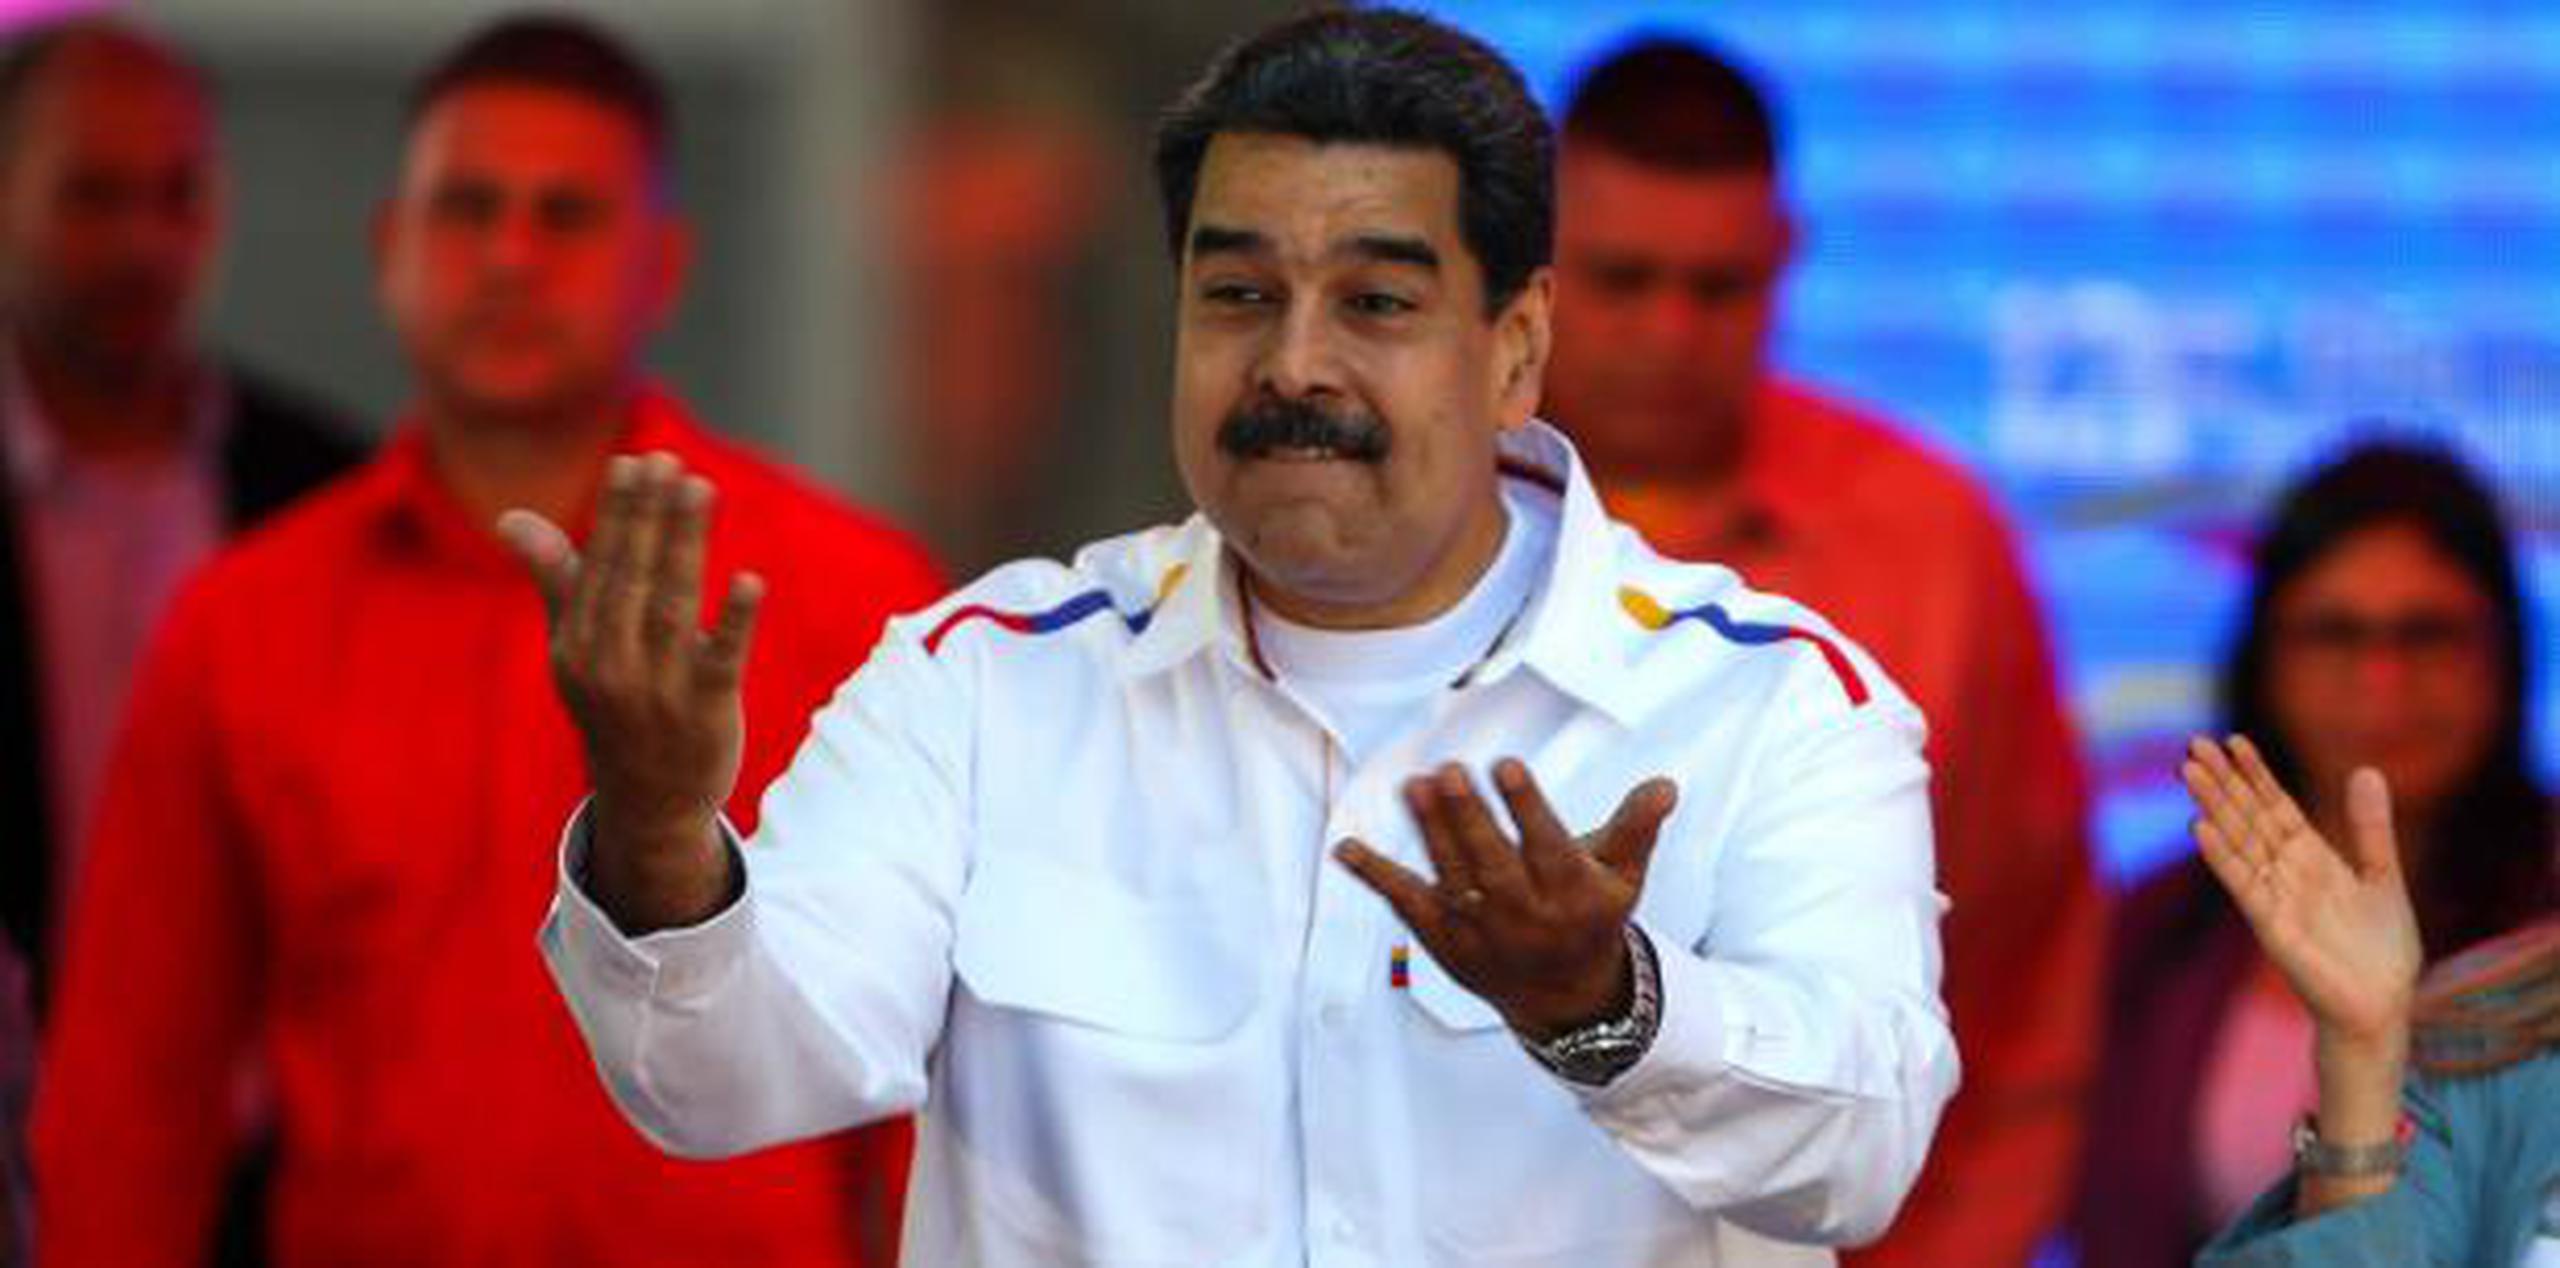 "Jamás me imaginé que iban a llegar a esto, asesinar a esta persona porque no está de acuerdo con el régimen", afirmó la viuda del oficial muerto opositor al gobierno de Maduro. (AP)